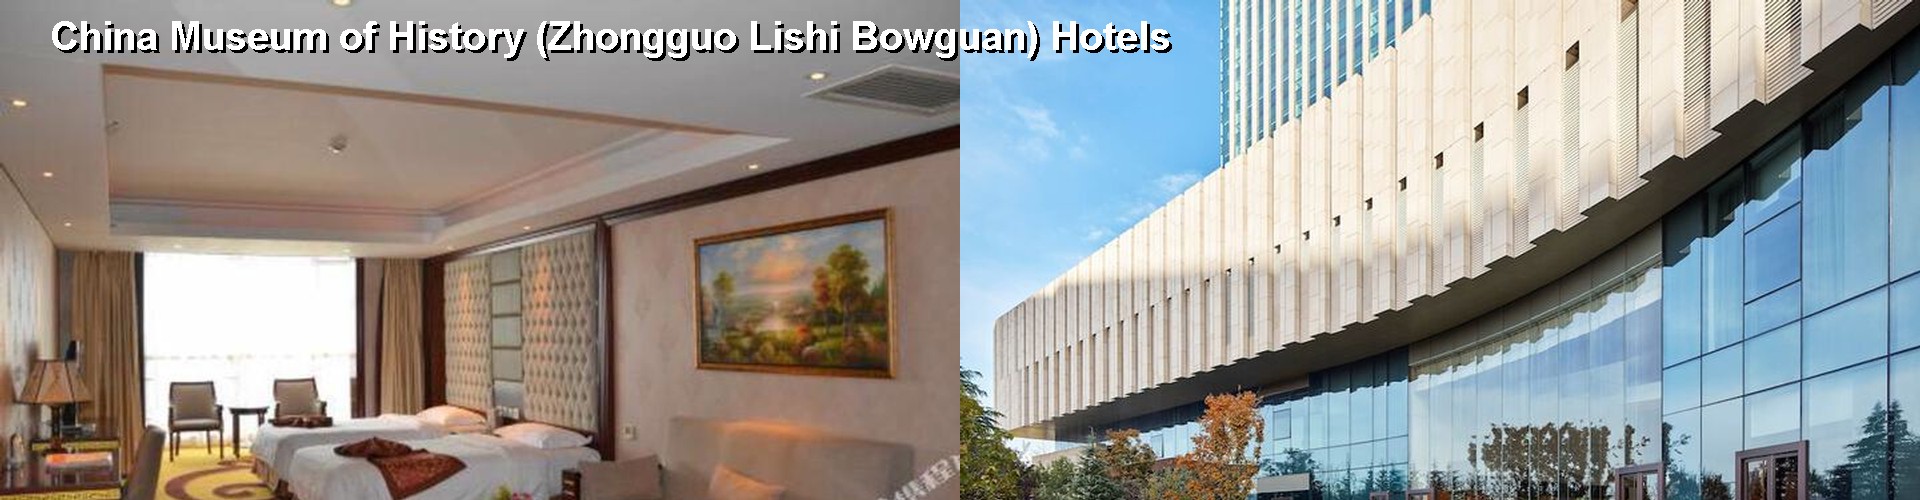 2 Best Hotels near China Museum of History (Zhongguo Lishi Bowguan)